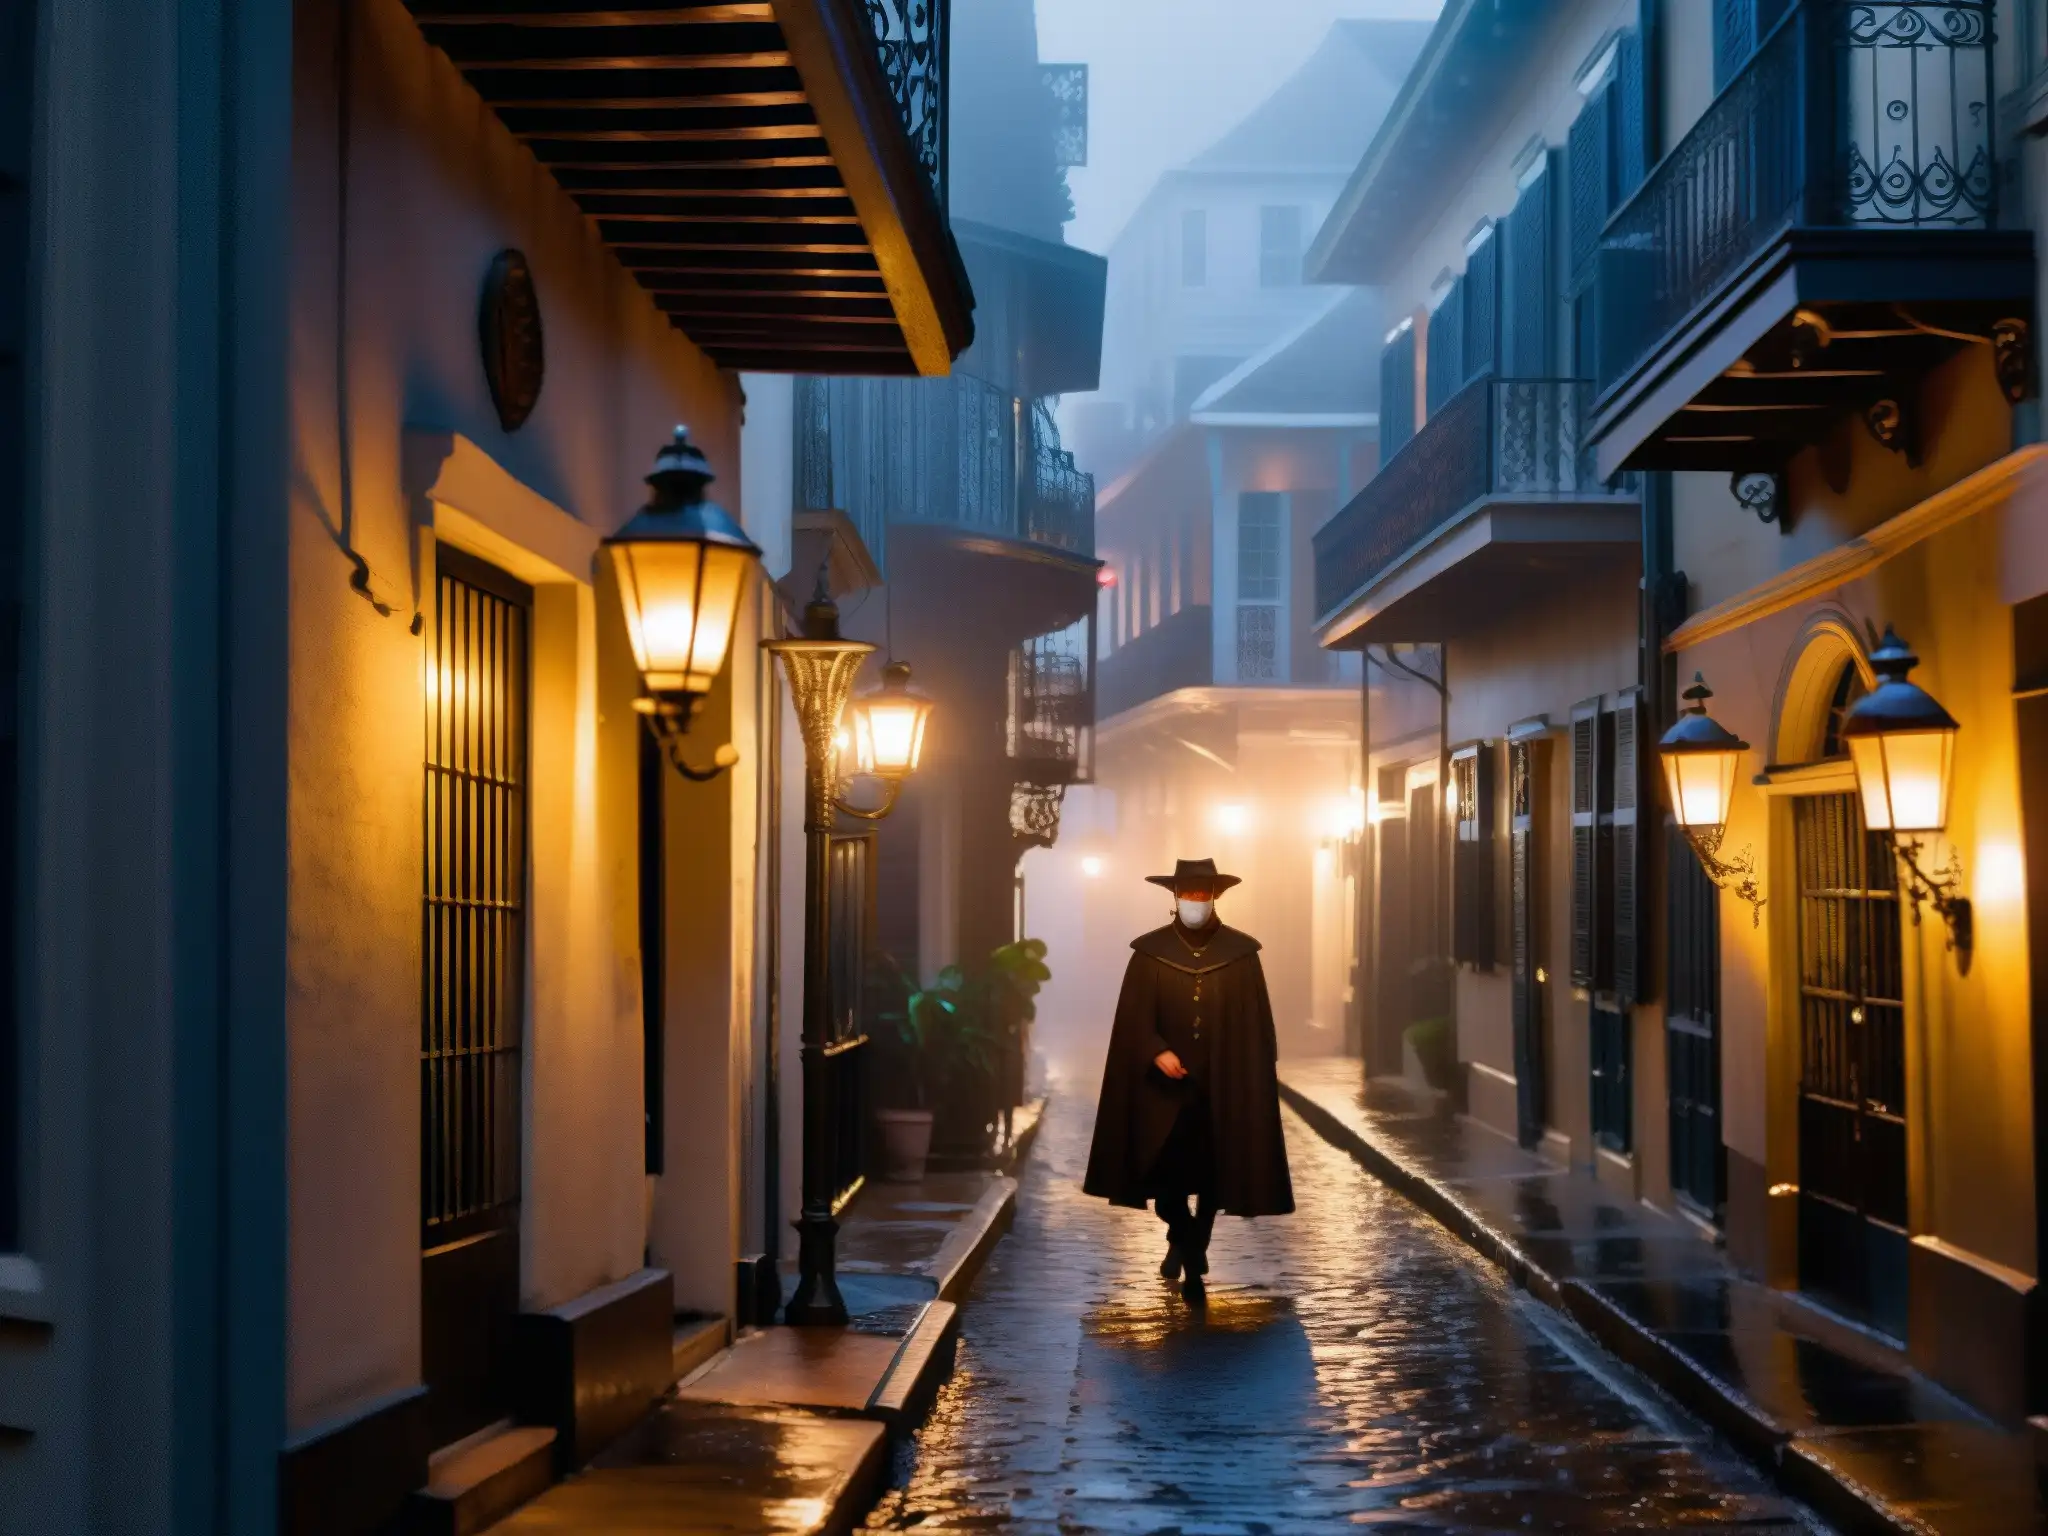 Fantasma de la Ópera Nueva Orleans: Un callejón misterioso en el French Quarter con neblina, balcones de hierro y una figura en la penumbra